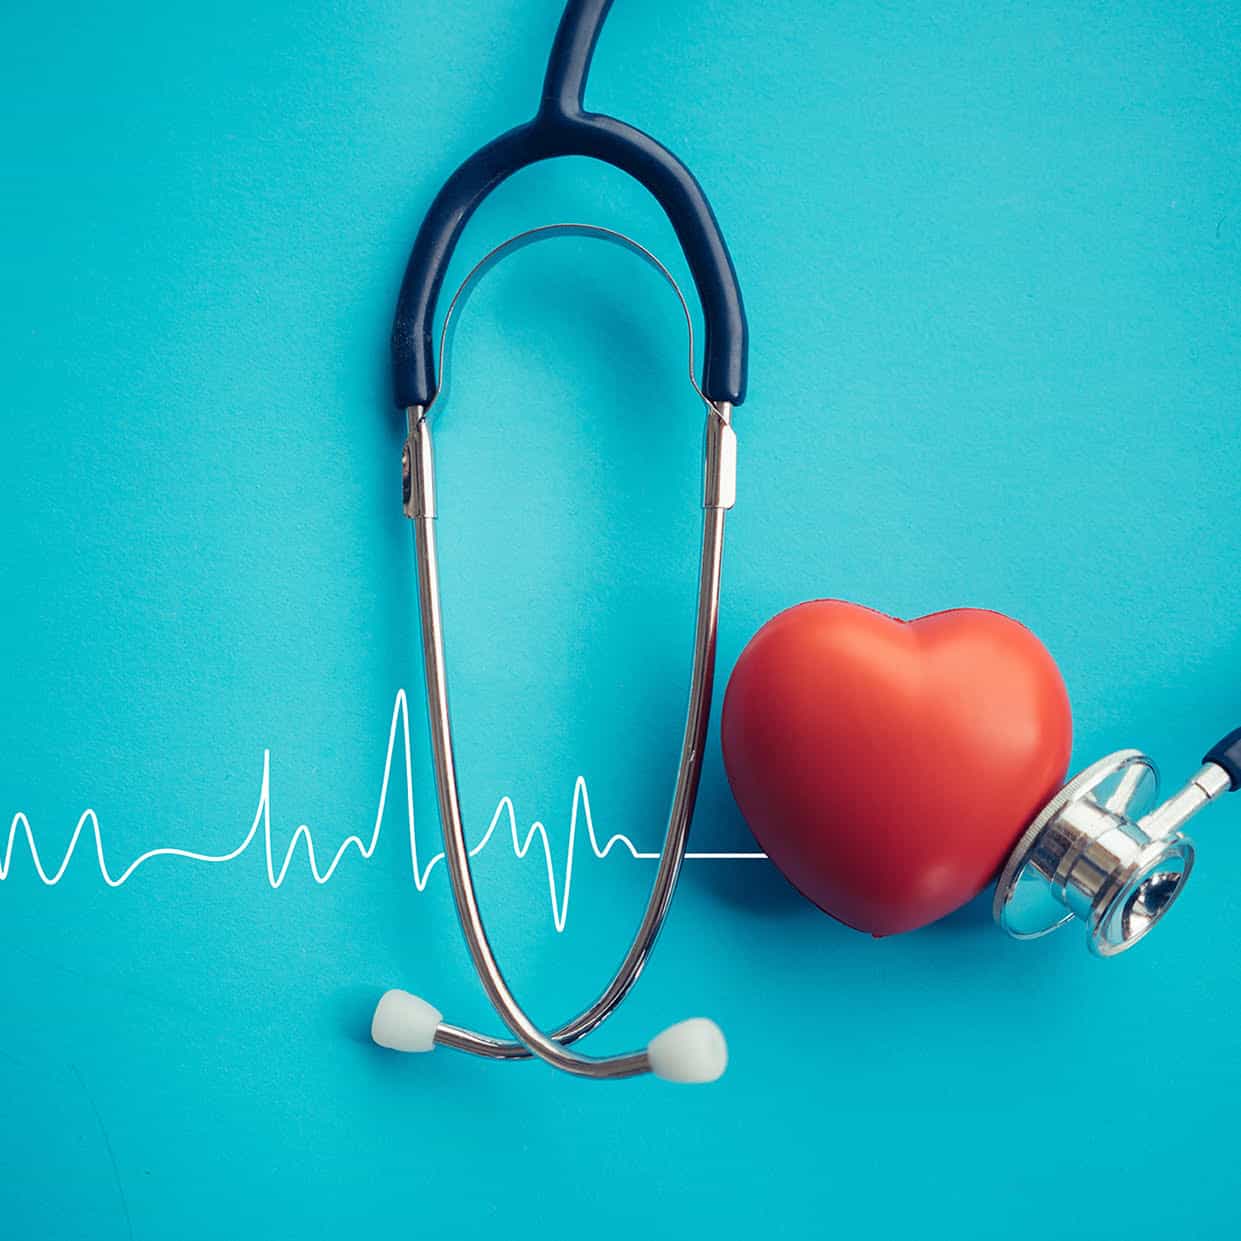 Alessandro Casini corso online HRV heart rate variability evidenze scientifiche applicazione pratica